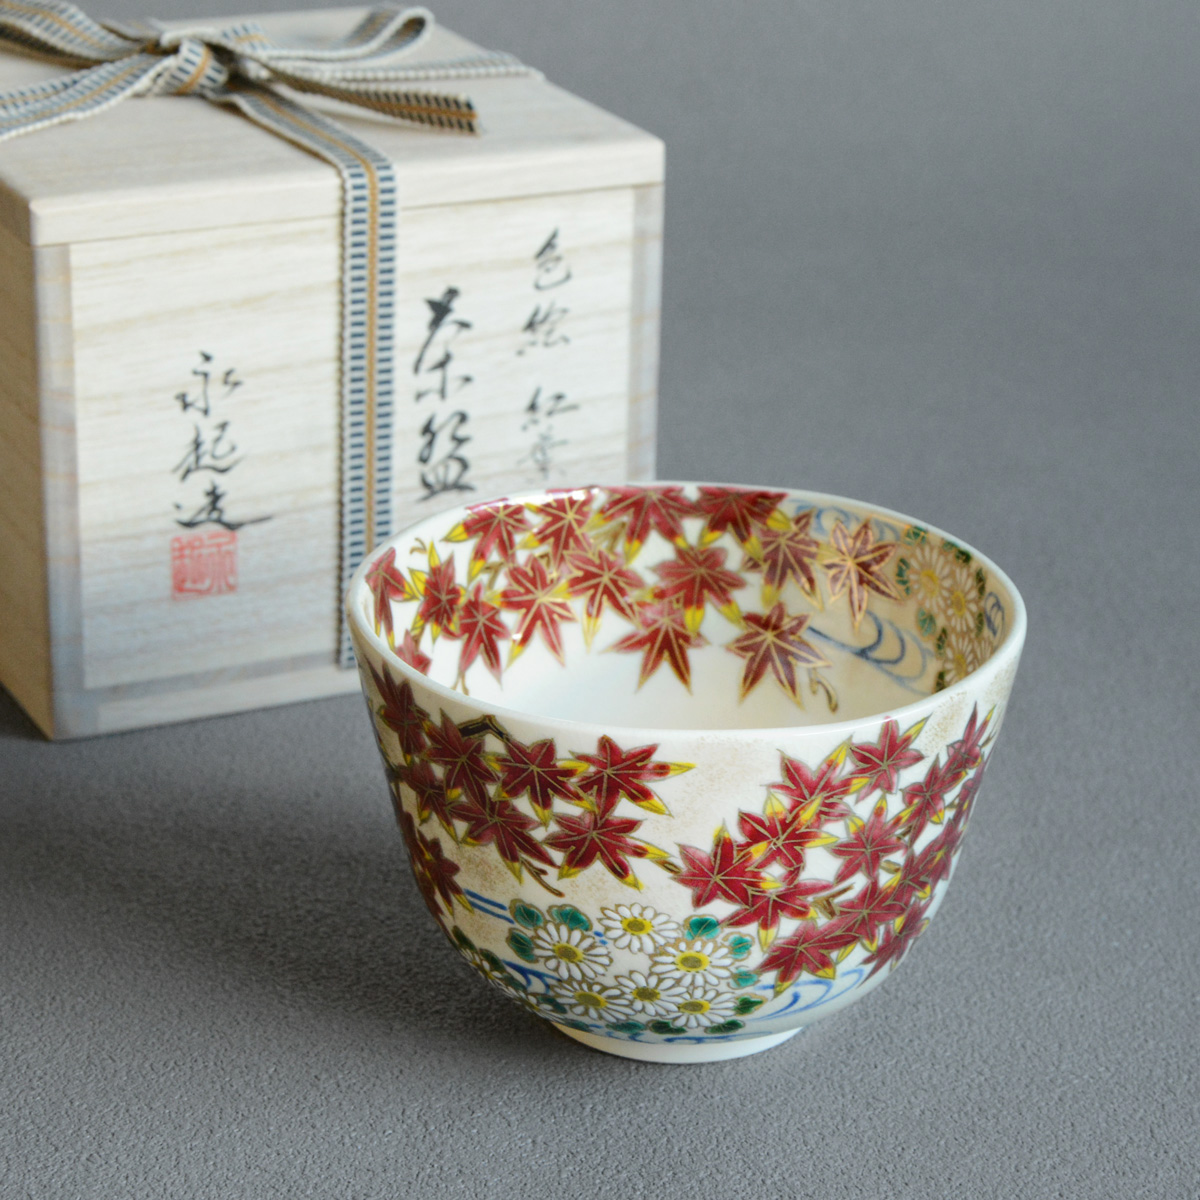 茶碗 色絵 紅葉 景徳鎮 王懐英作 茶道 茶道具 - コーヒー、ティー用品